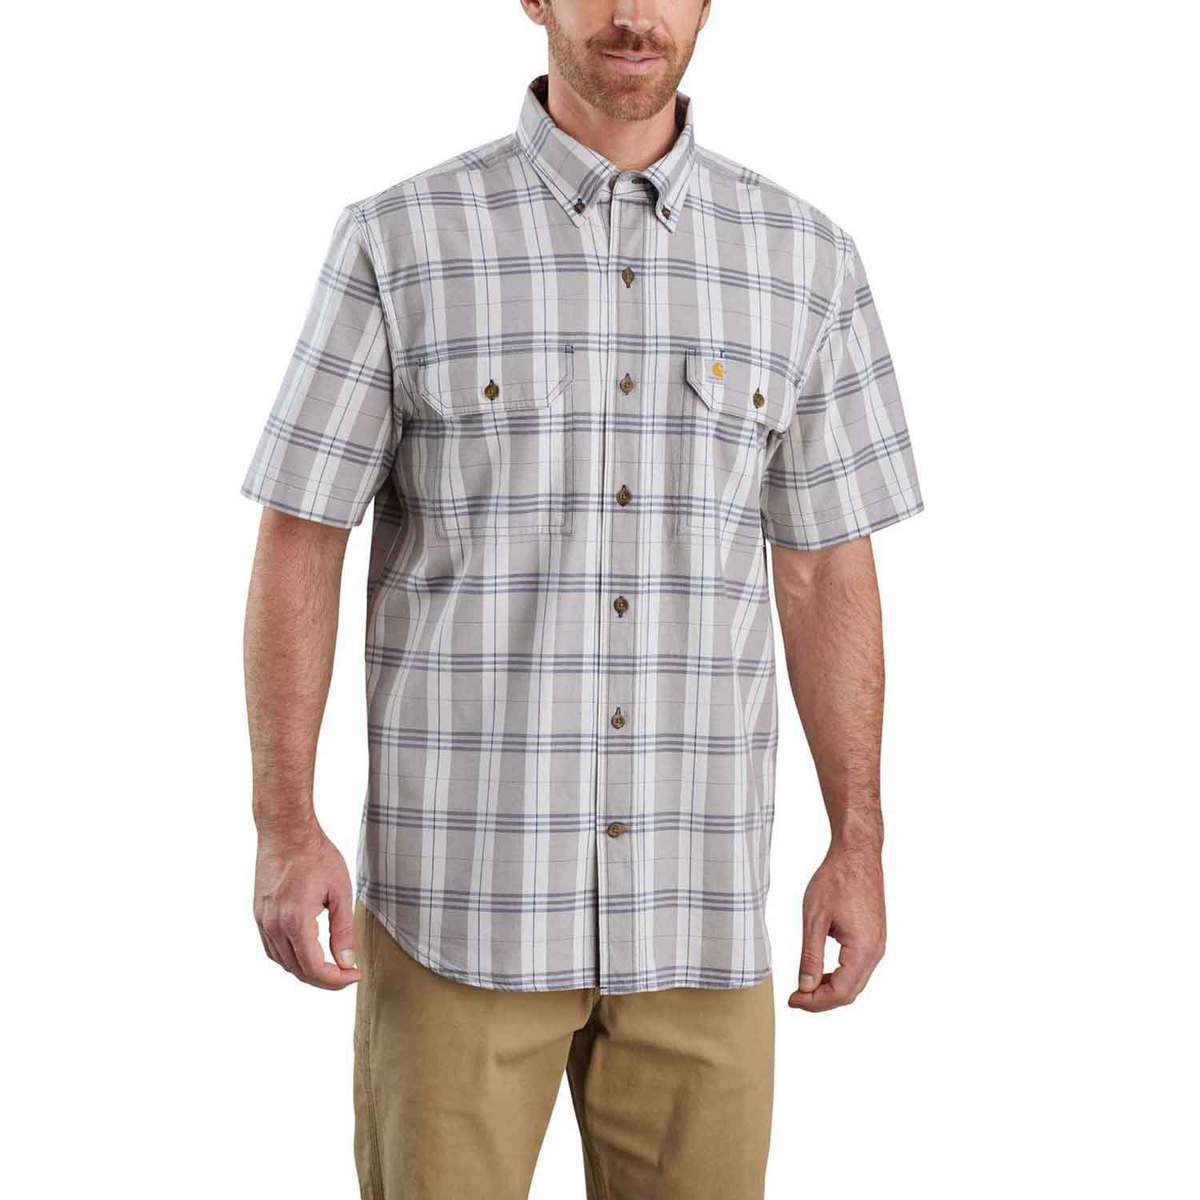 Carhartt Men's Original Fit Plaid Short Sleeve Shirt - Steel - XL Tall ...